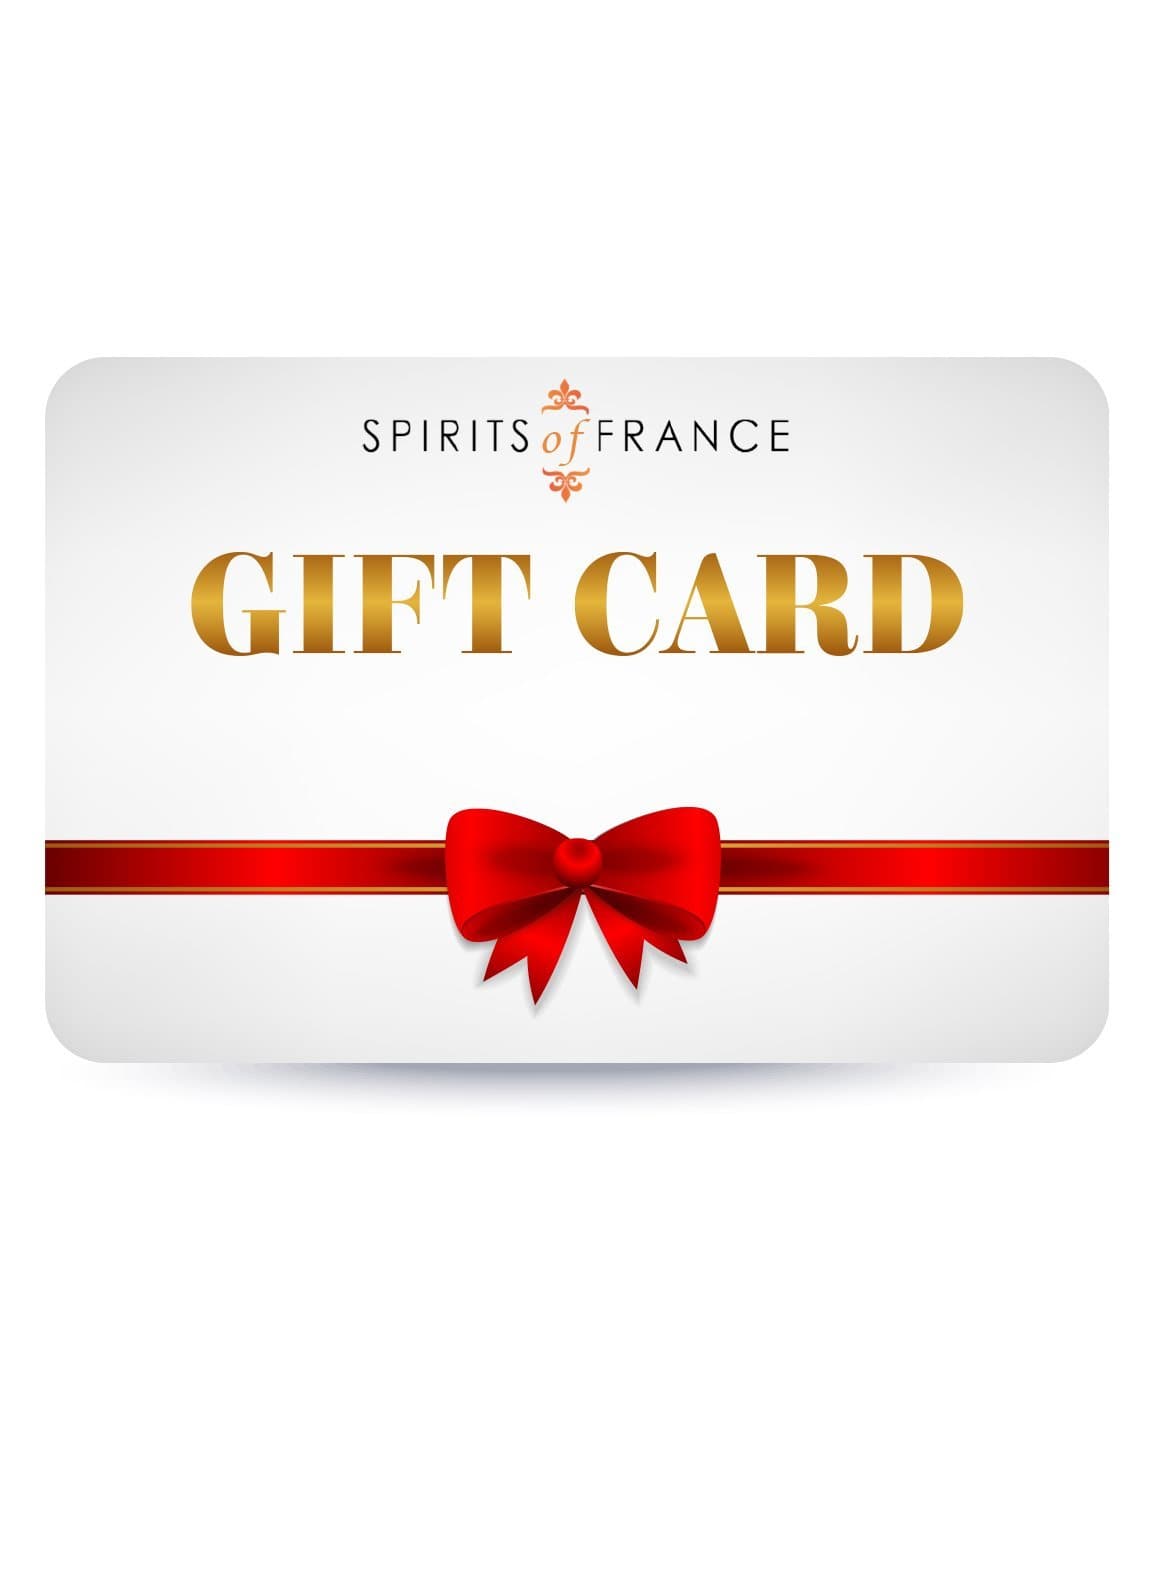 Spirits of France Digital Gift Card | Gift Cards | Shop online at Spirits of France